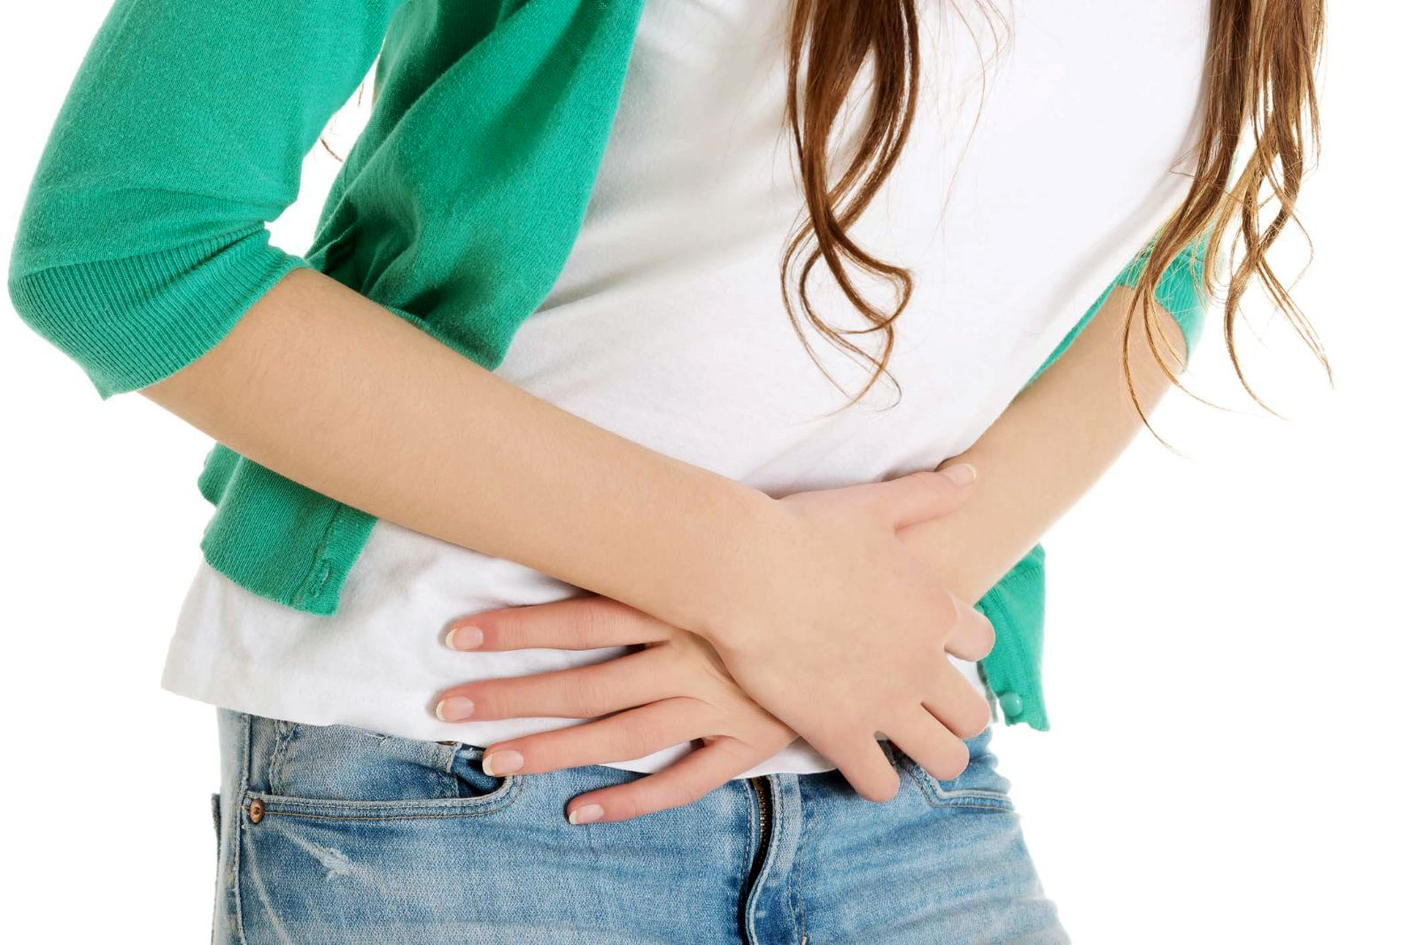 Cần đi khám nếu thấy dấu hiệu đau bụng bất thường trong chu kỳ kinh nguyệt - ẢNH MINH HỌA